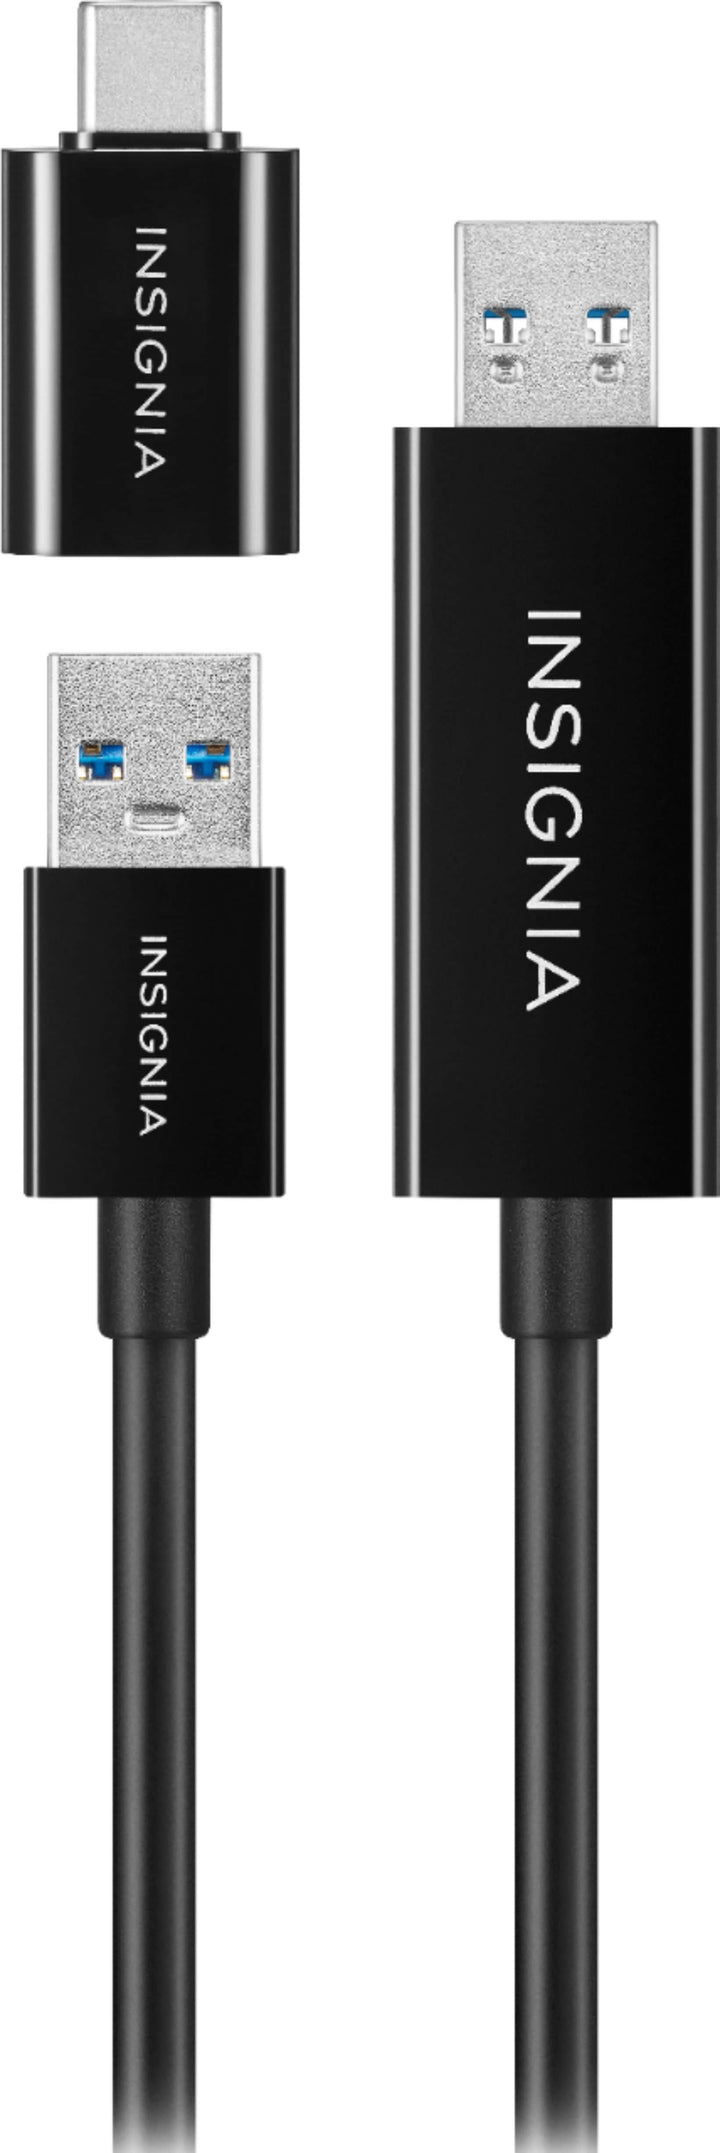 Insignia™ - 6' USB 3.0 File Transfer Cable - Black_4